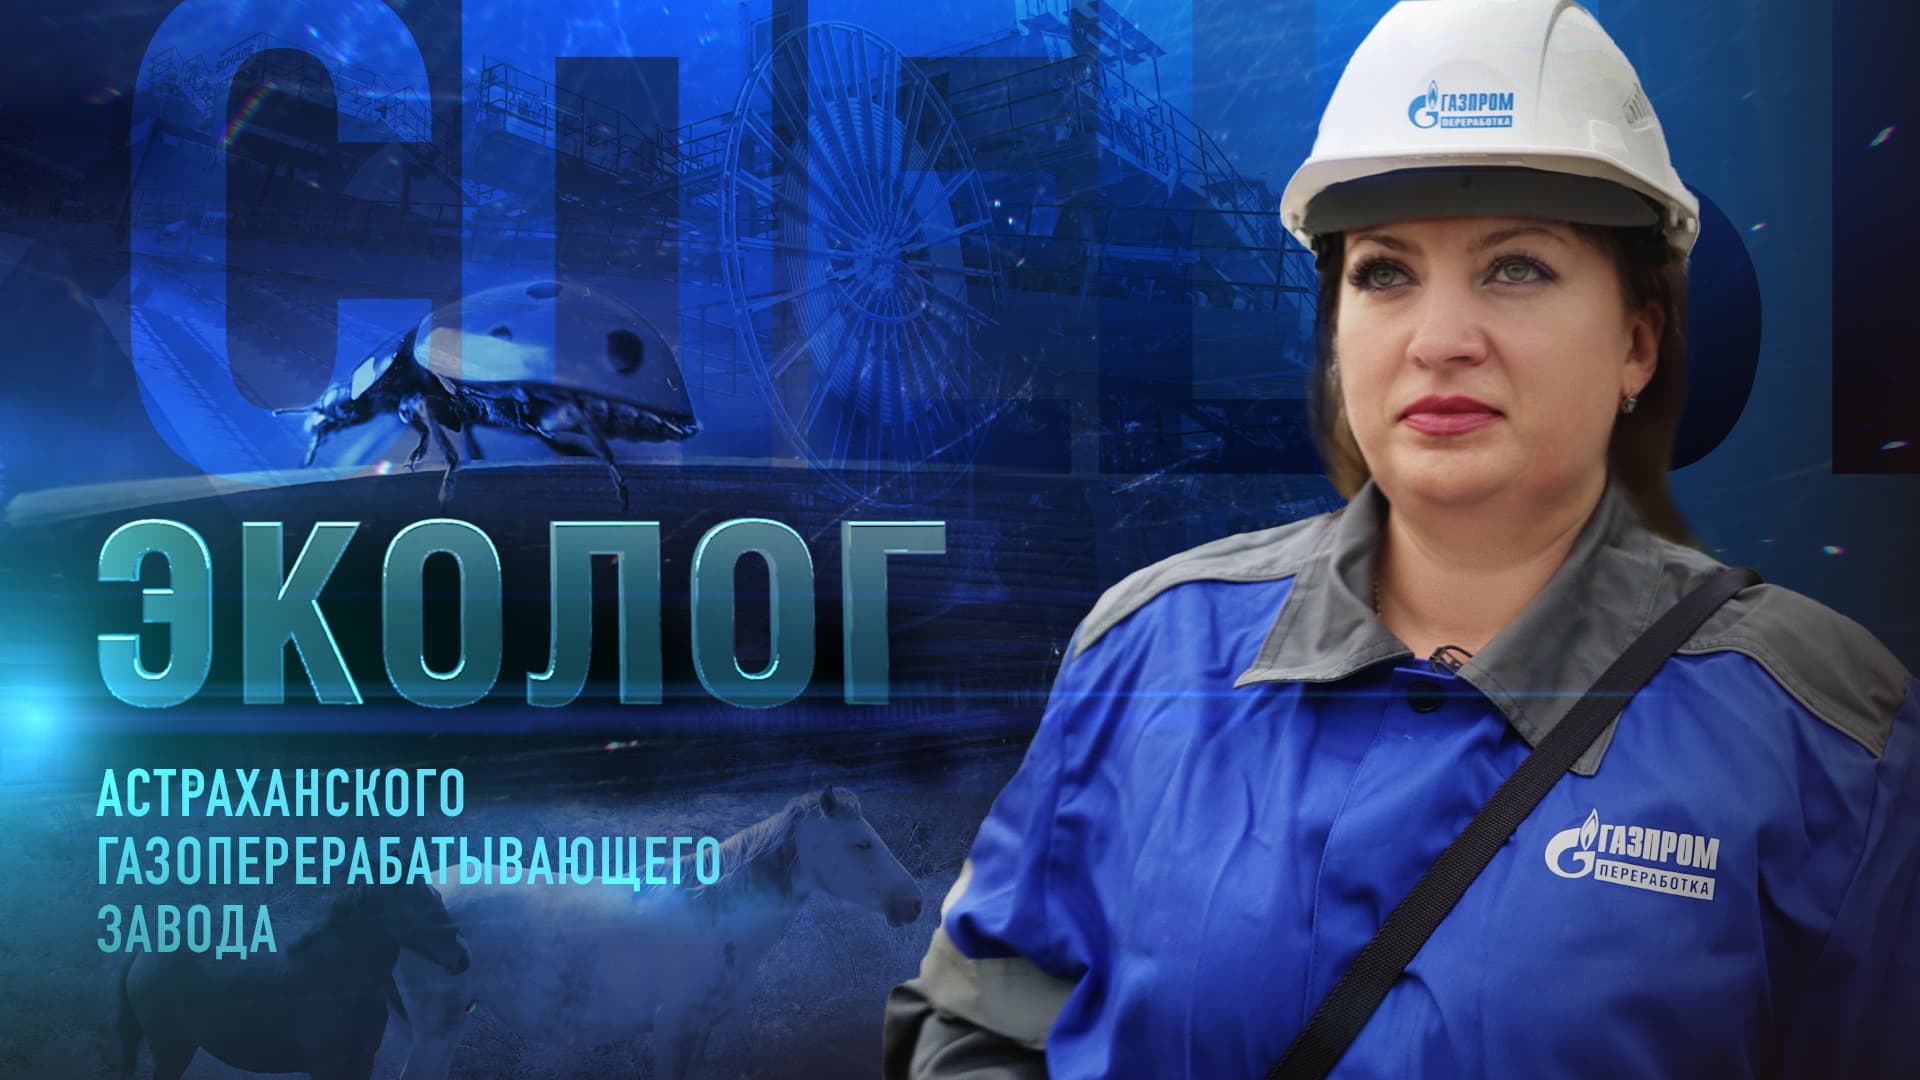 Эколог Астраханского газоперерабатывающего завода | Спецы